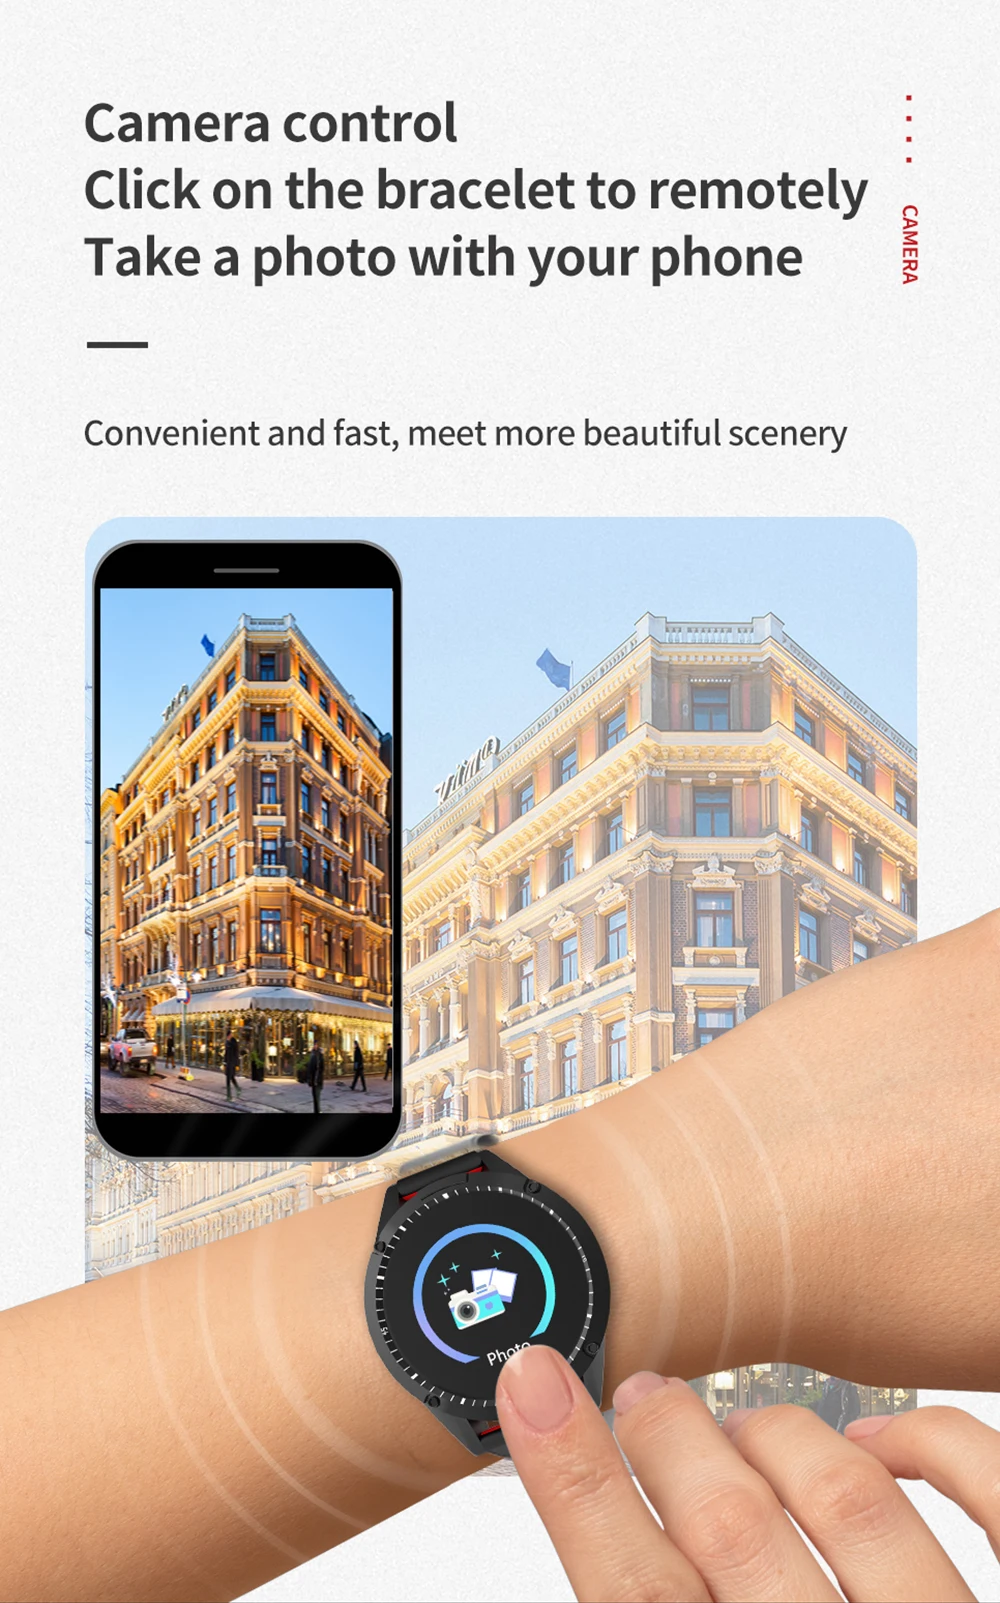 MAFAM новейший G50 умный браслет для мужчин и женщин монитор сердечного ритма Bluetooth фитнес-трекер спортивные часы IP67 водонепроницаемые умные